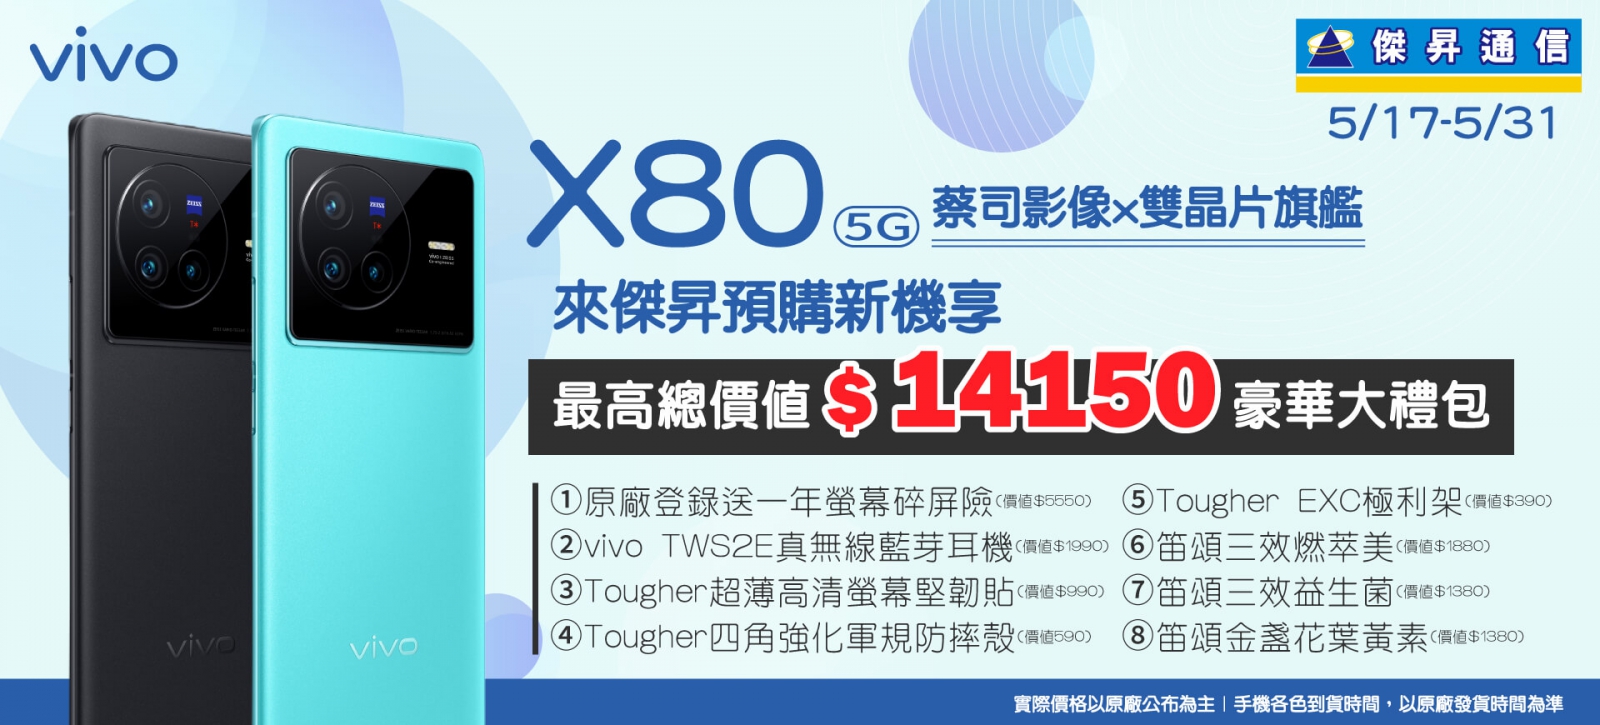 傑昇預購vivo X80最划算 大方送超過1.4萬元獨家預購禮